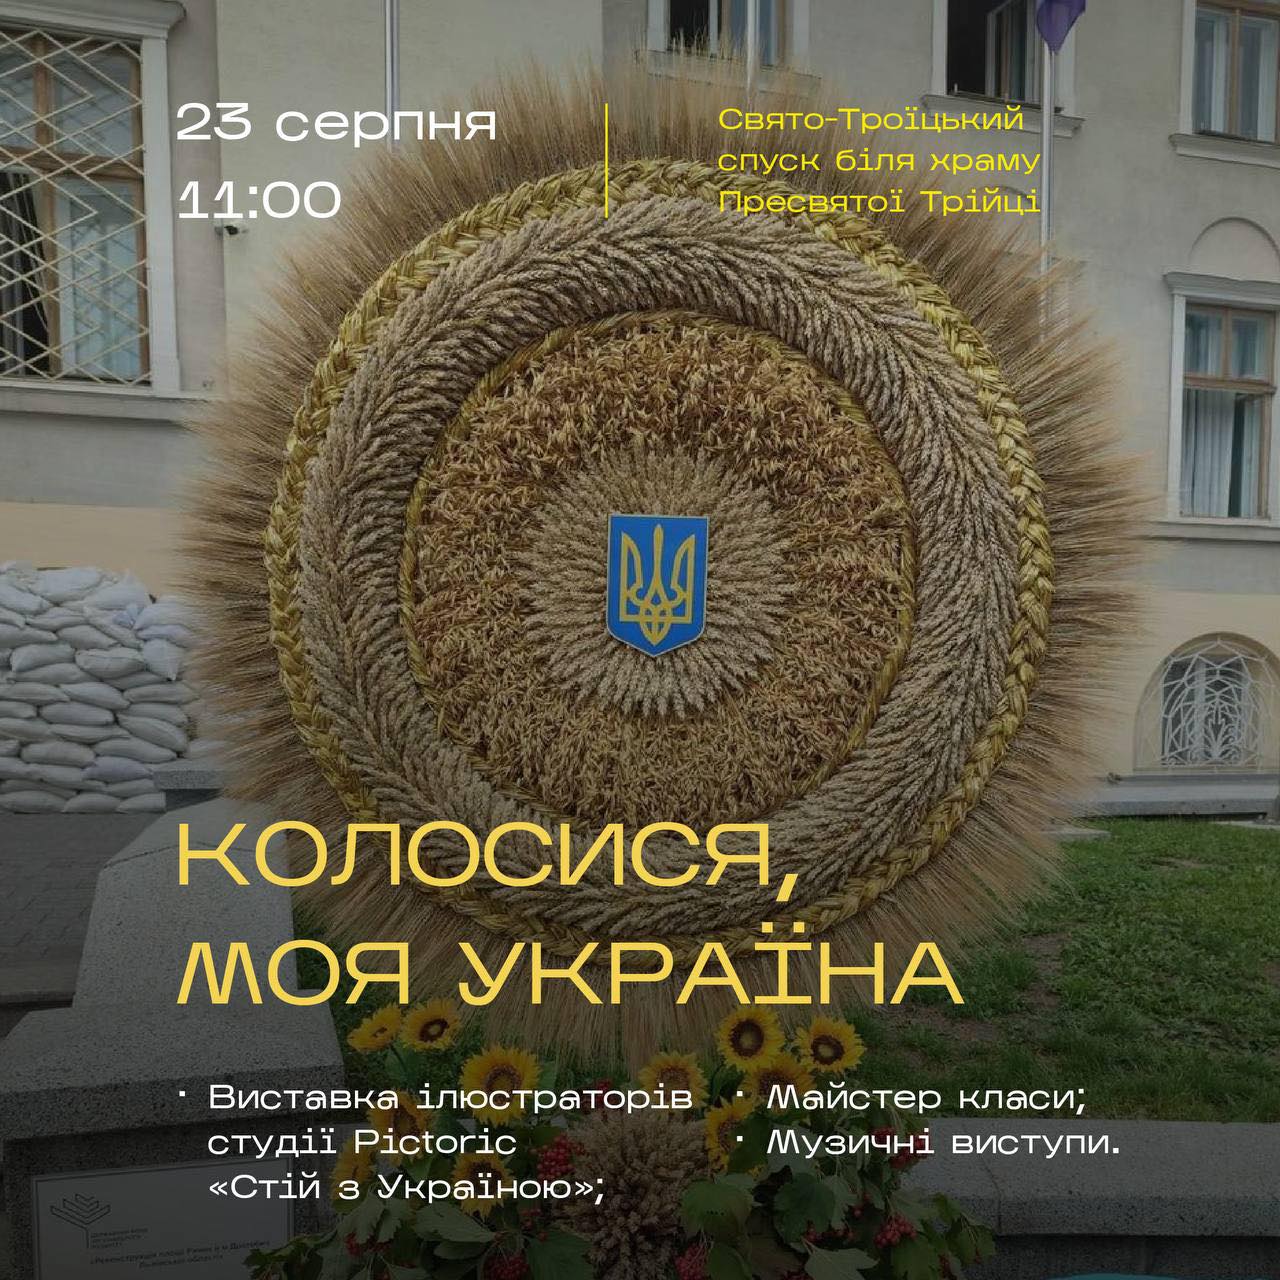 «Колосися, моя Україна» – у День Прапора в Дрогобичі експонуватимуть унікальну виставку